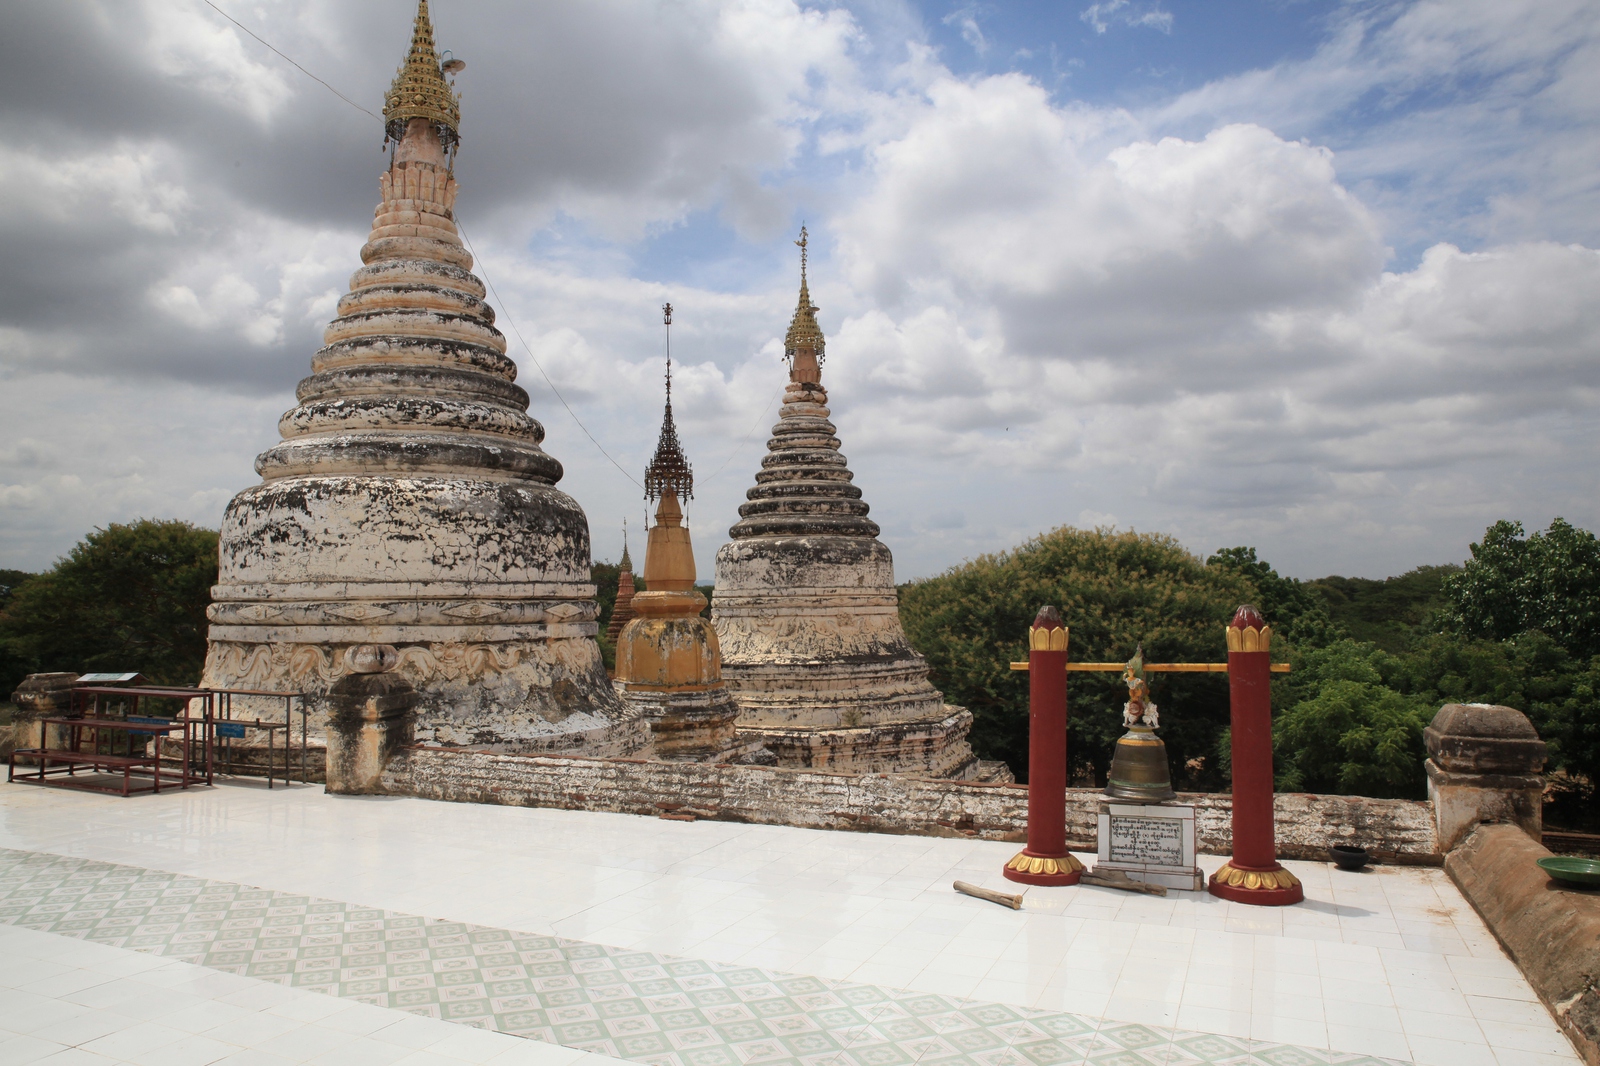 Bagan: Min O Chantha Phaya